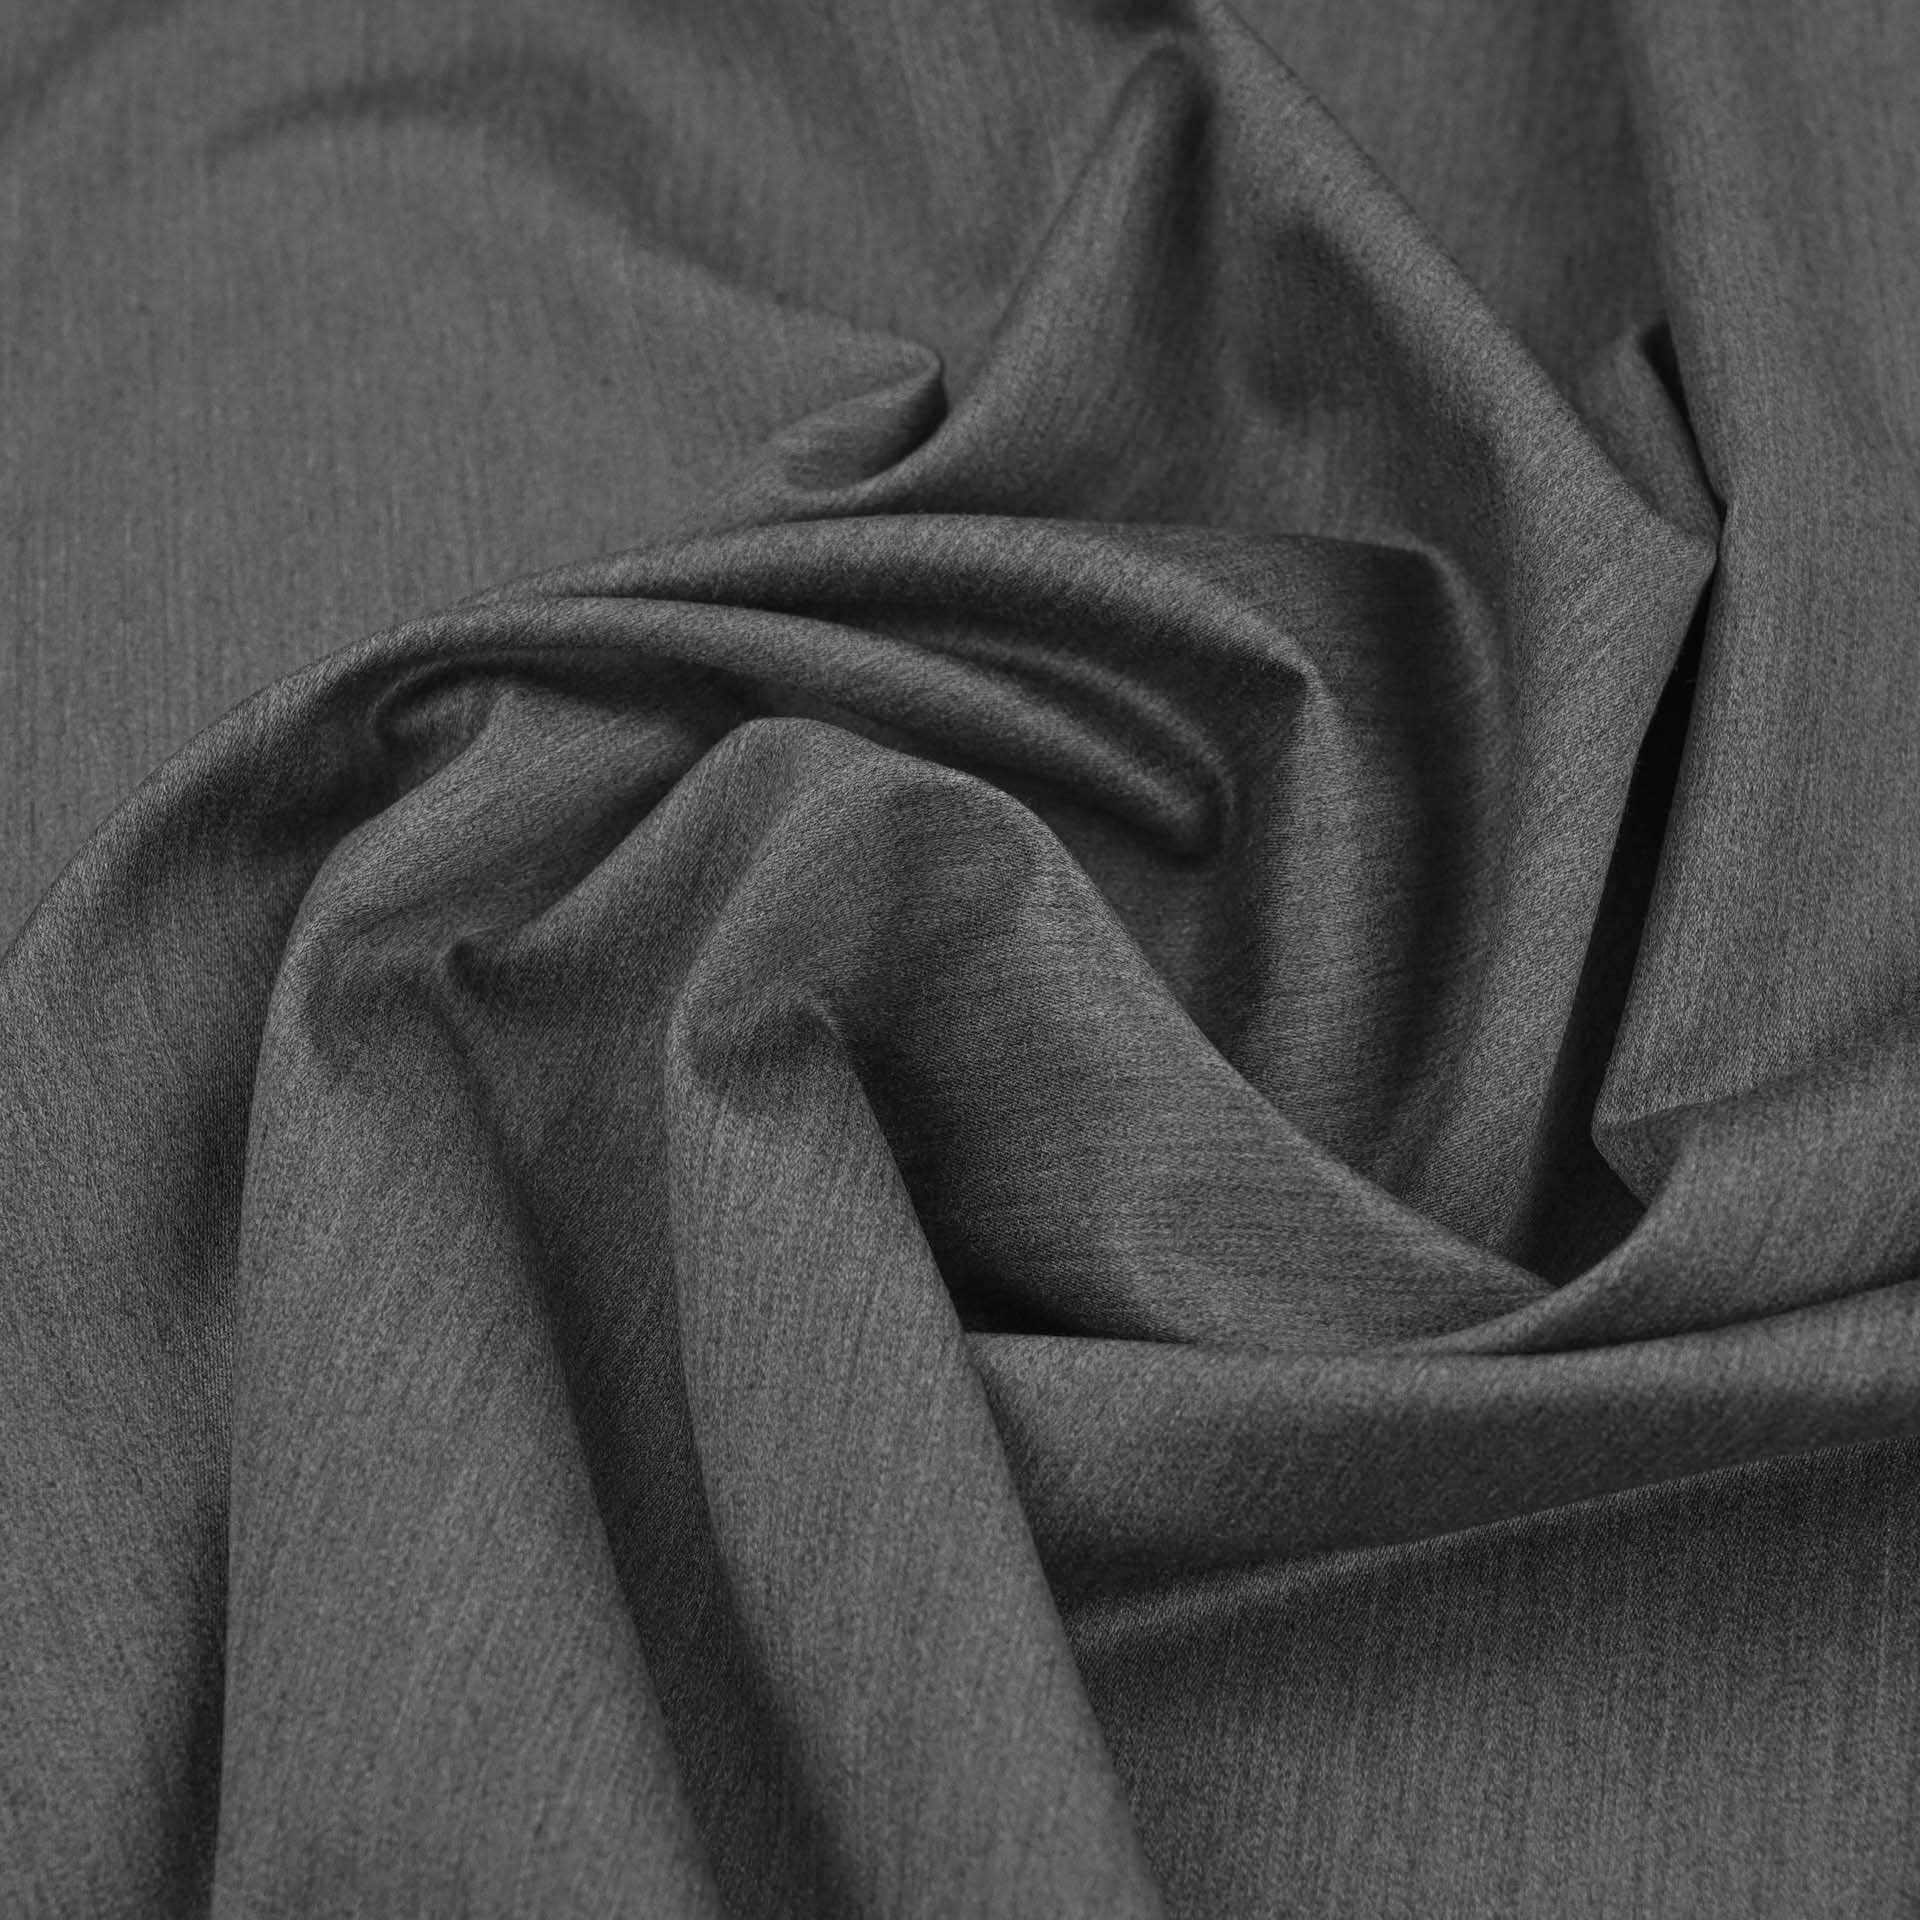 Grey Melange Suiting Fabric 2288 – Fabrics4Fashion